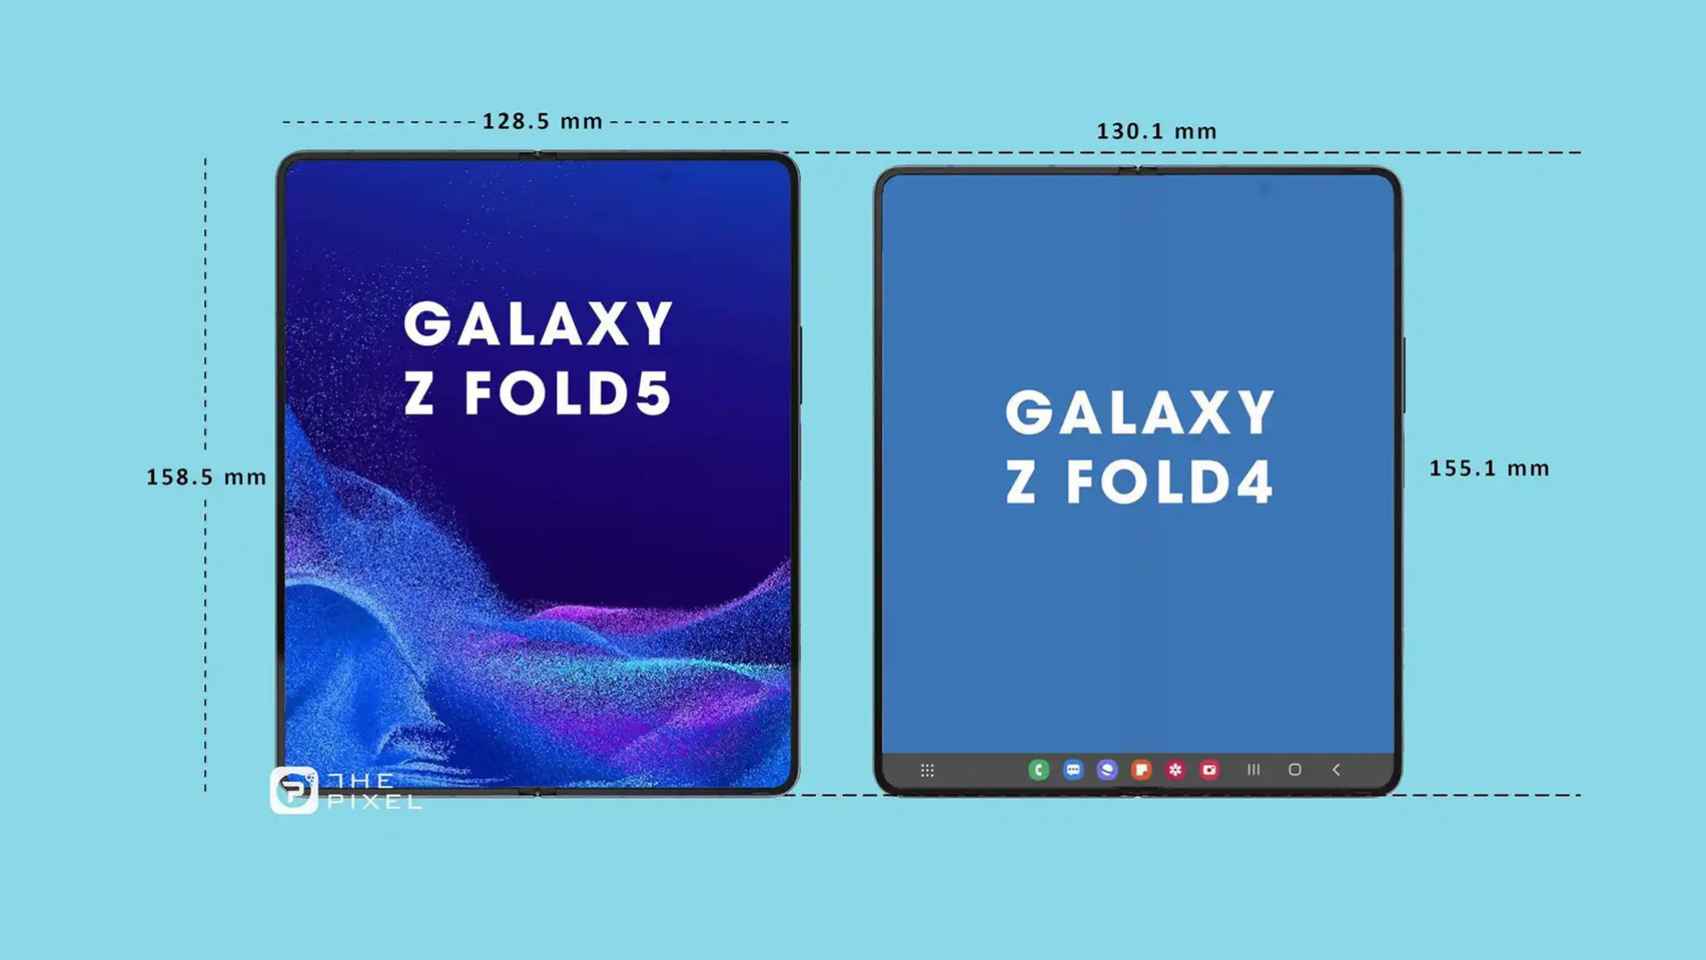 Comparación entre el Galaxy Z Fold 4 y el supuesto Z Fold 5.